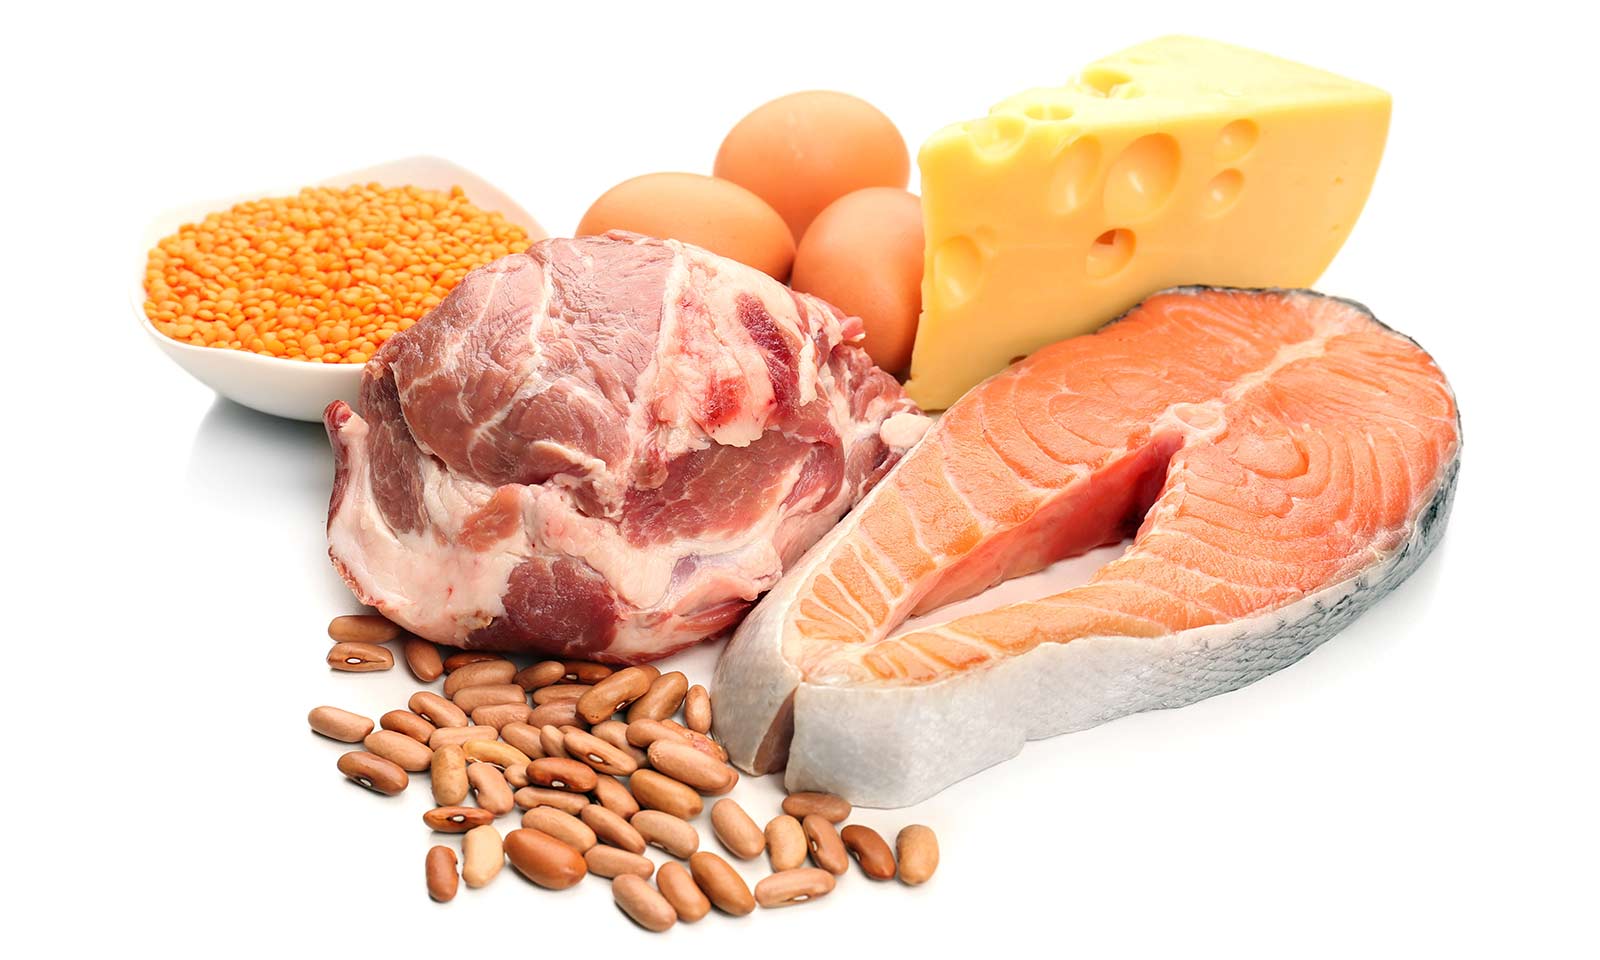 Animals meat. Белки продукты. Питание белки. Мясо рыба молоко. Белковые продукты мясные.